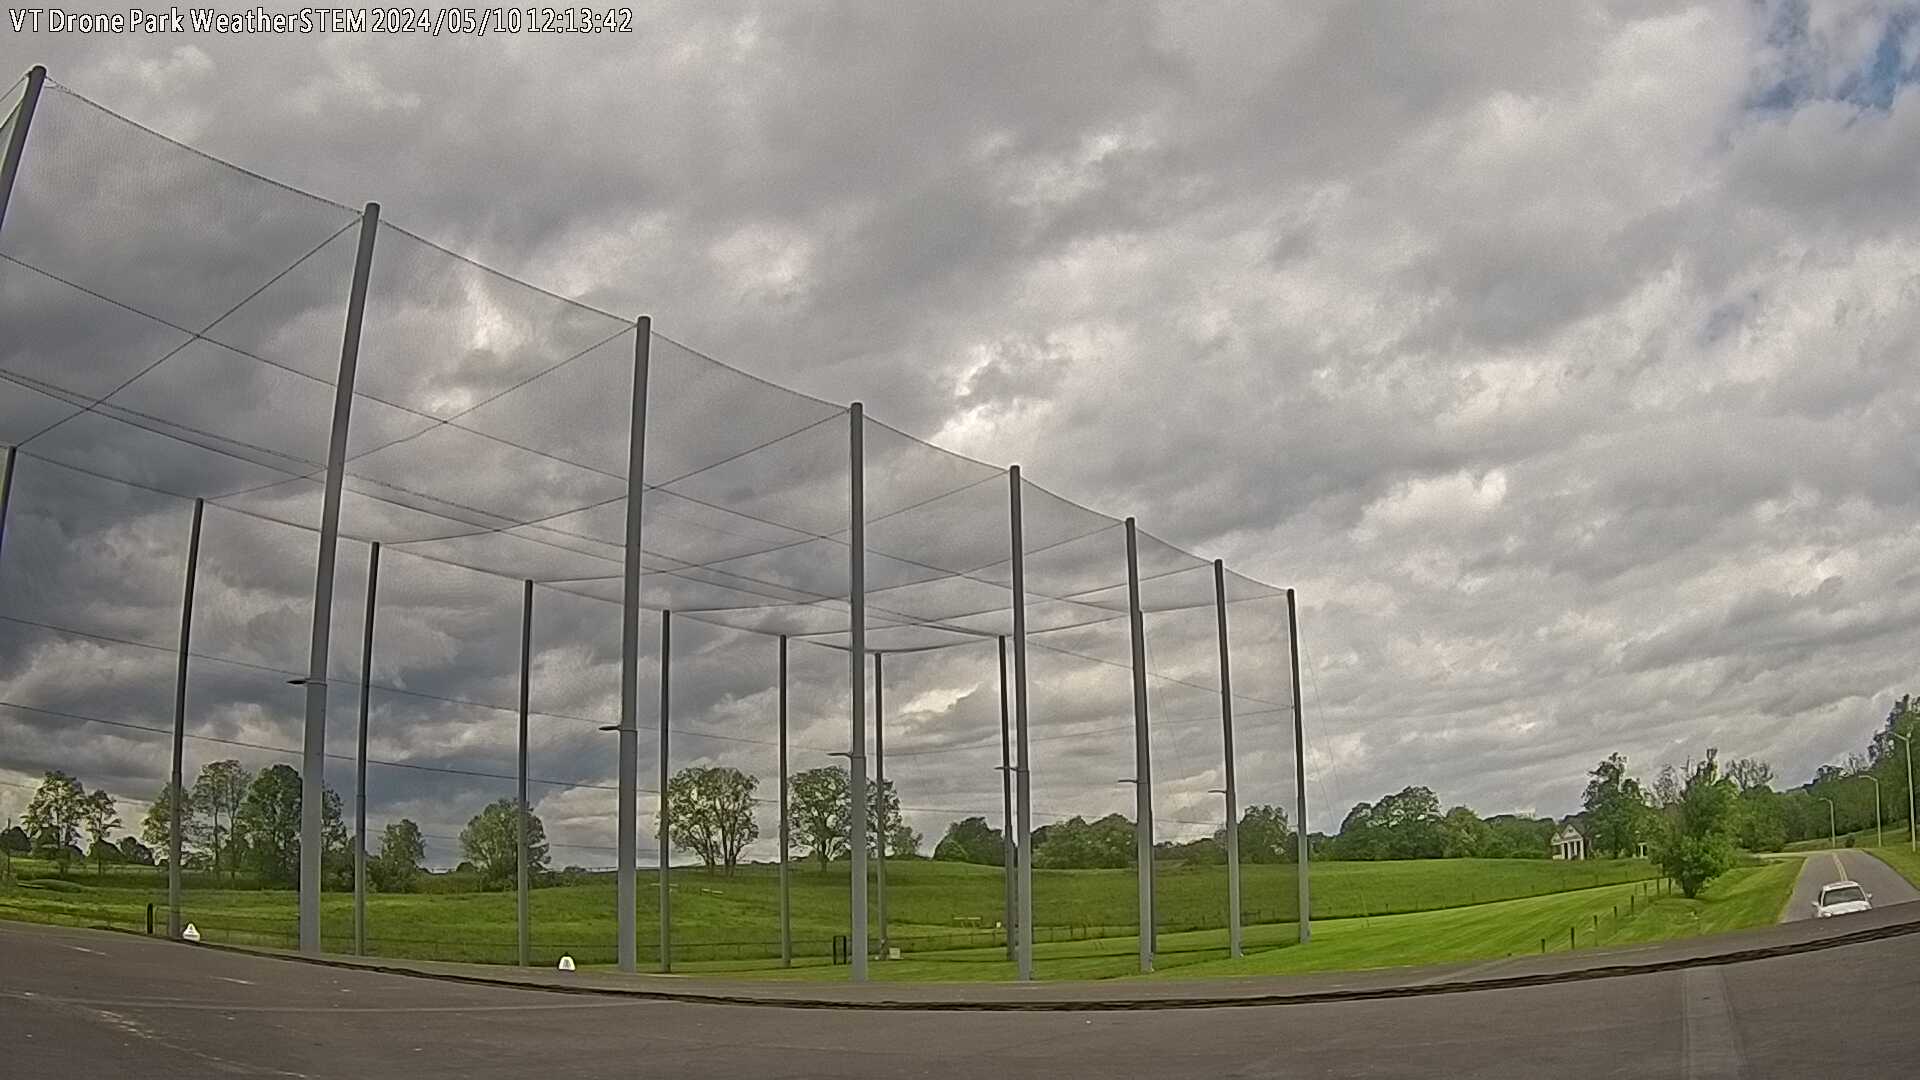  WeatherSTEM Cloud Camera VTDroneParkWx in Montgomery County, Virginia VA at Virginia Tech Drone Park